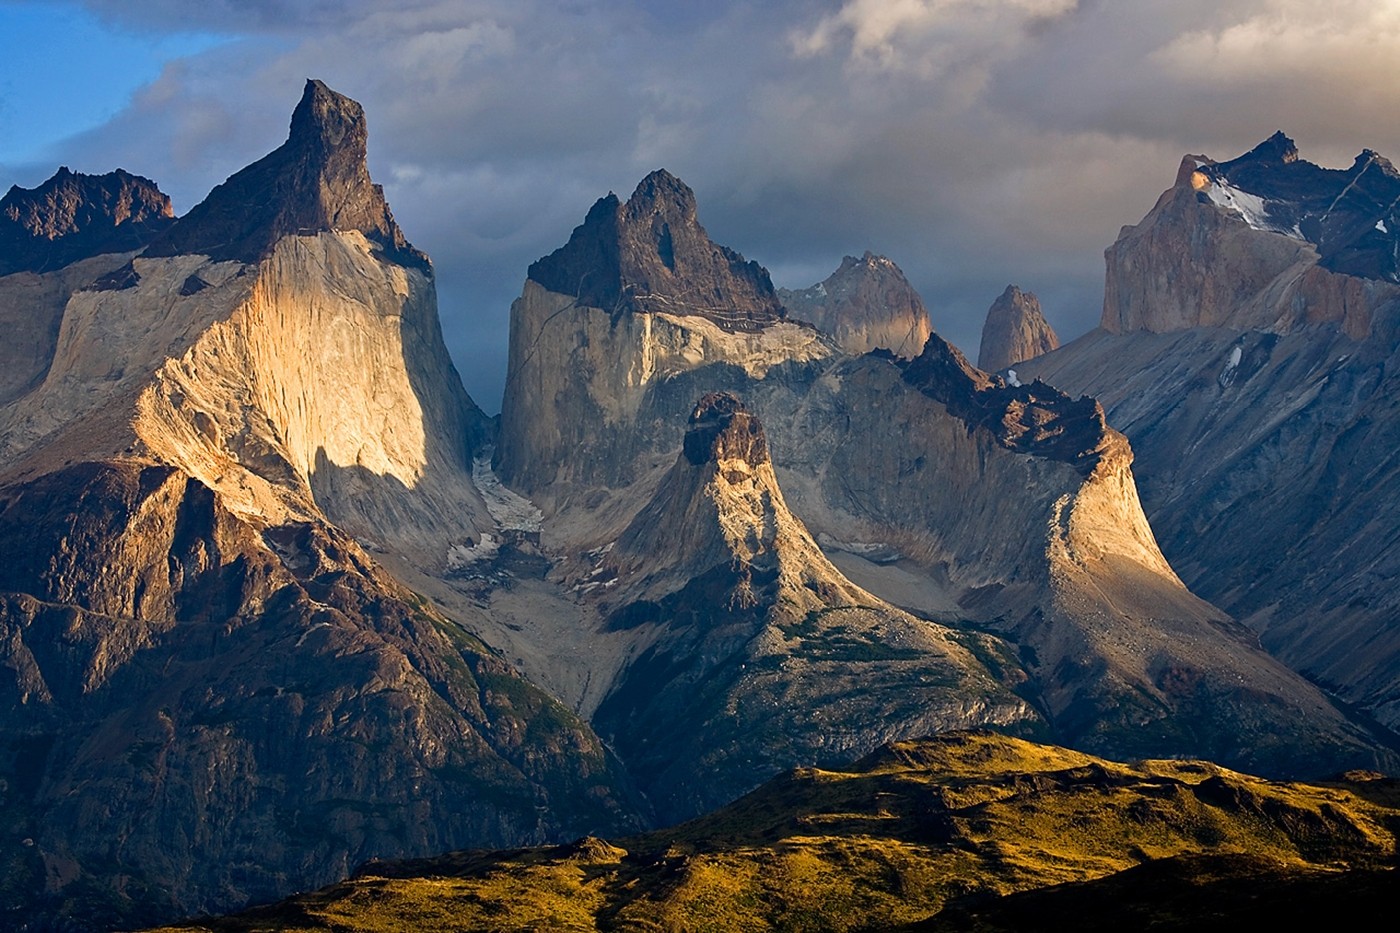 Длиннейшая в мире горная цепь. Торрес дель Пайне.Южная Америка. Чили горы Патагония. Патагонские Кордильеры. Торрес дель Пайне Патагония.